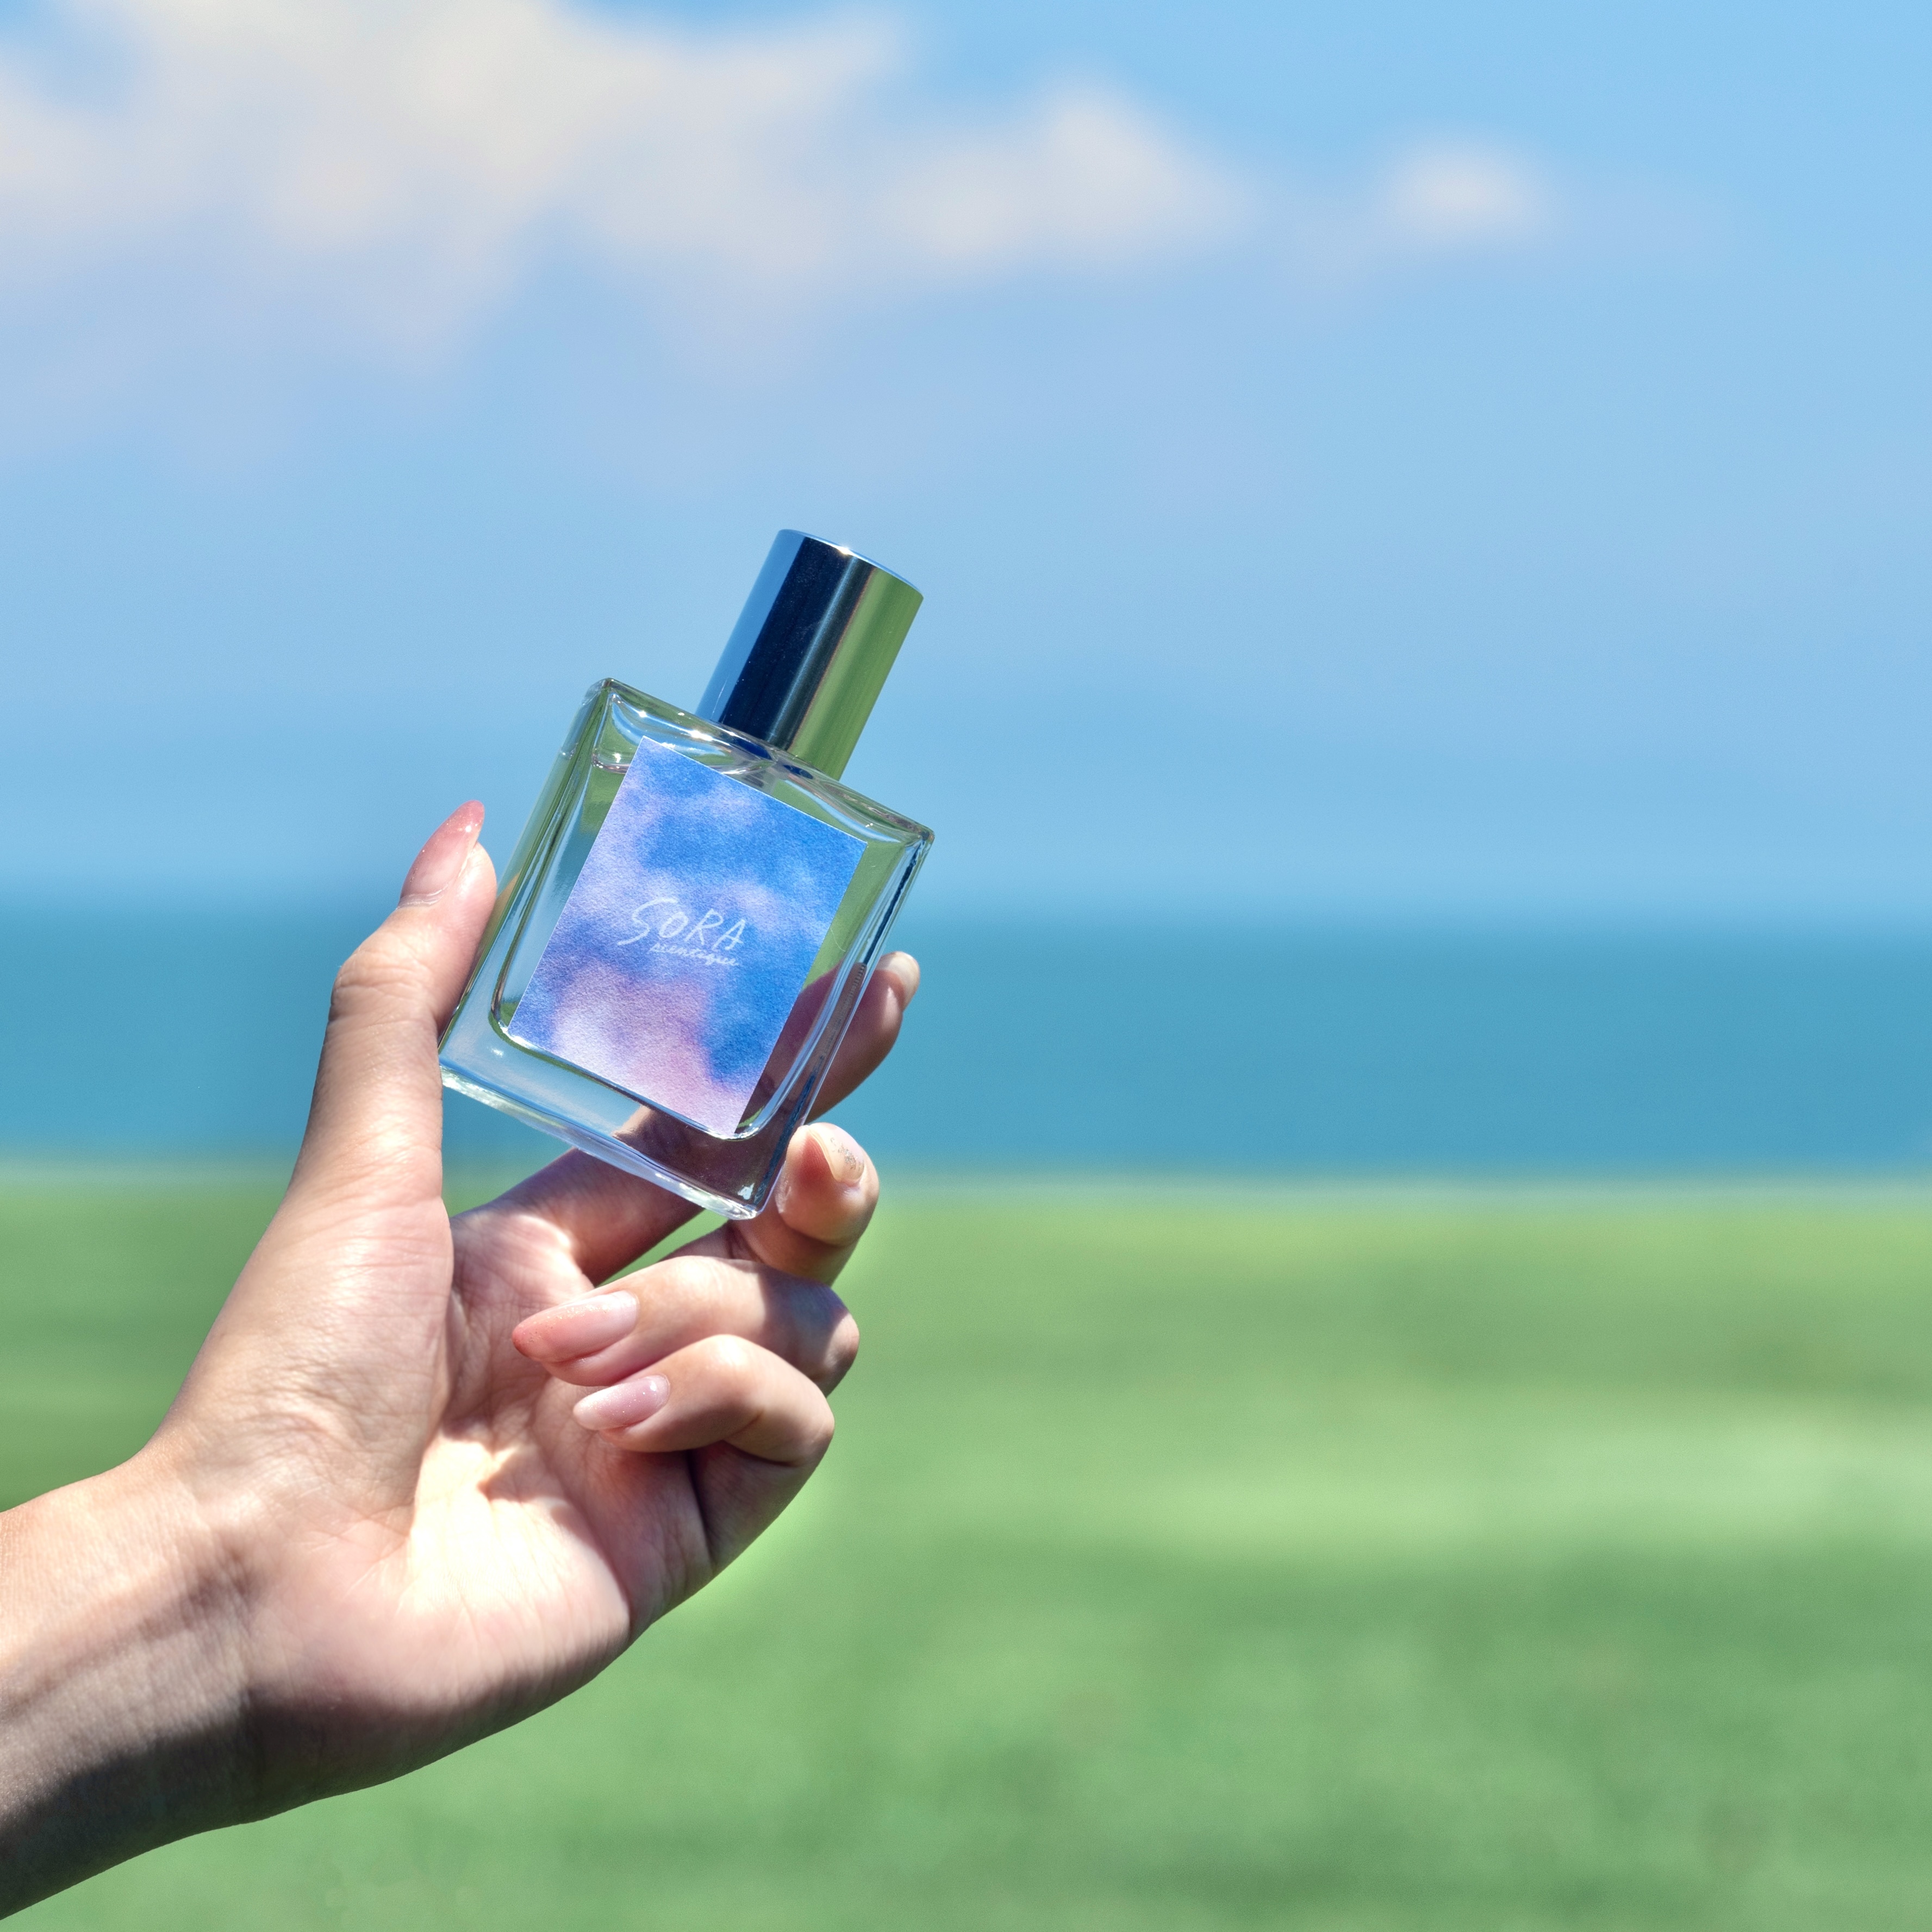 フレグランスブランド「SORA scentique」より、
夏空の下で飲む、爽やかなレモネードの香り新登場！
7月26日より公式ECサイトにて先行予約開始